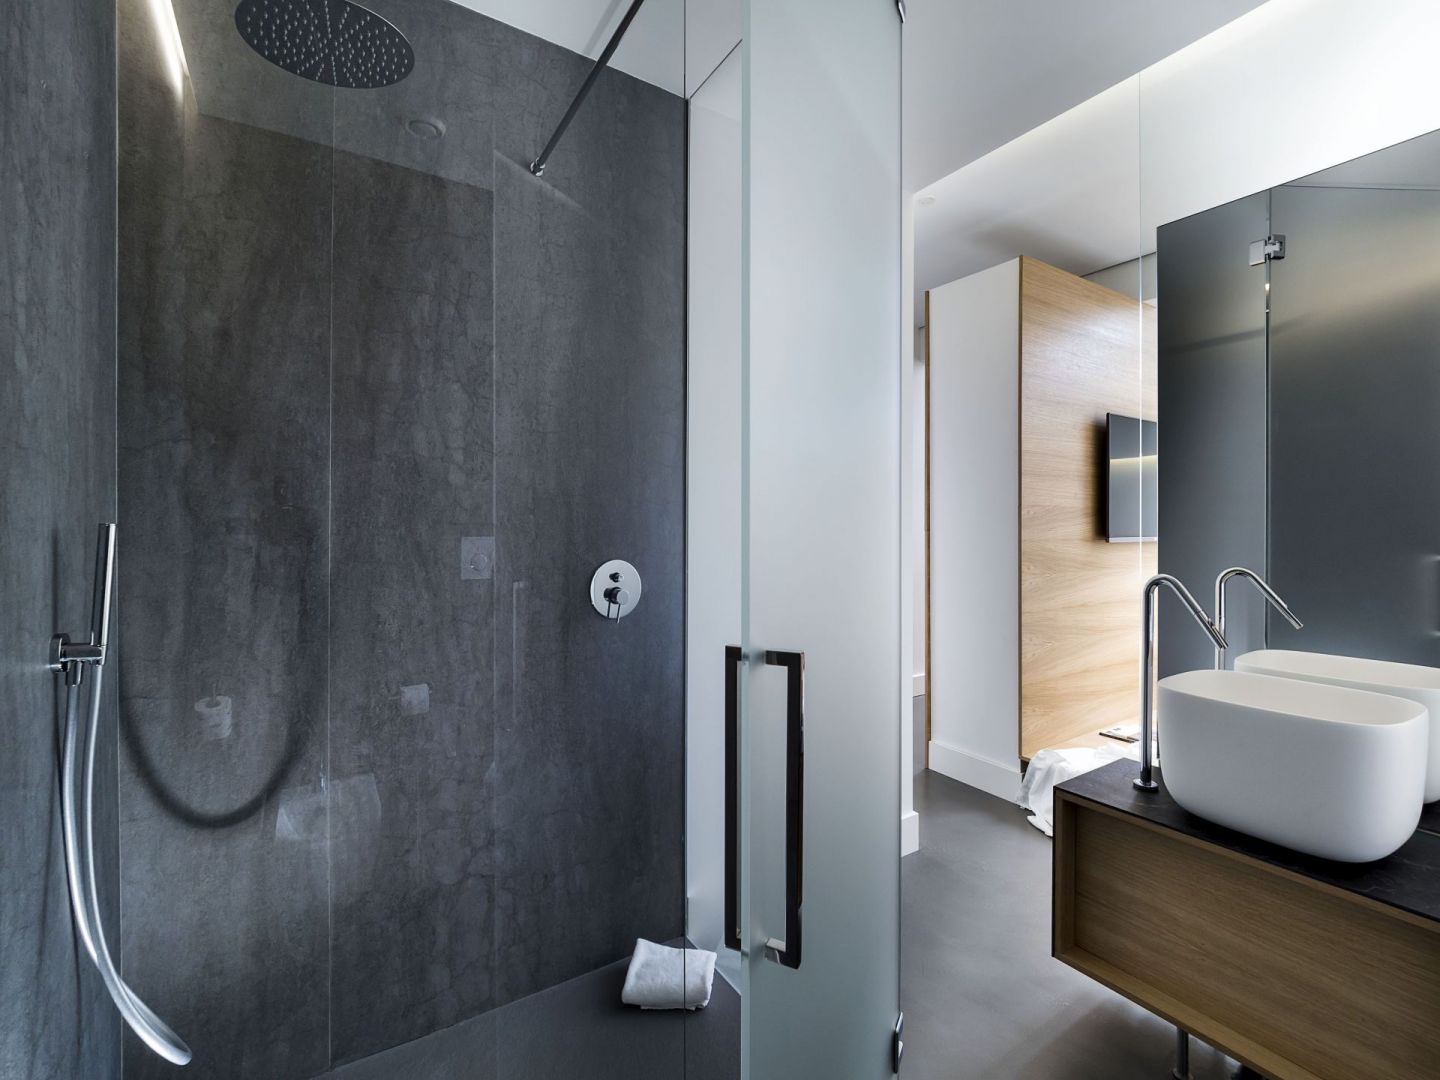 Spieki kwarcowe w łazienkach w hotelu Habitat w Katanii. Fot. Laminam